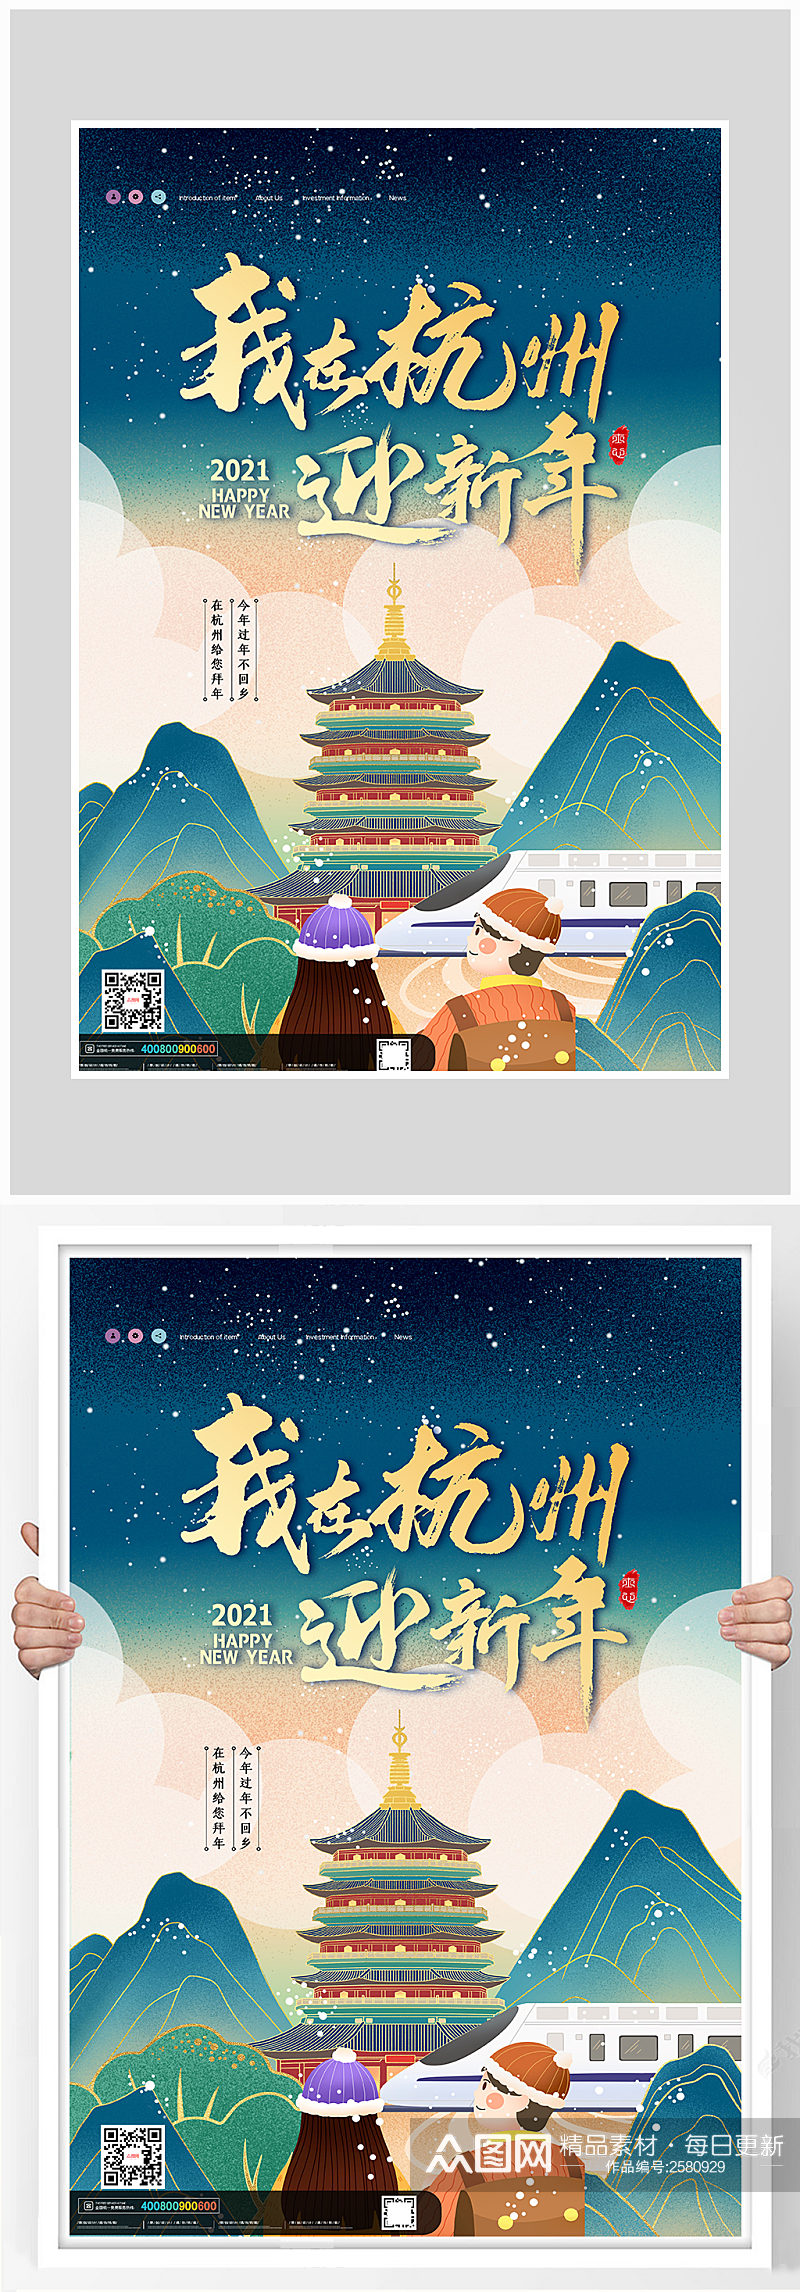 国潮风我在杭州过年新年海报设计素材